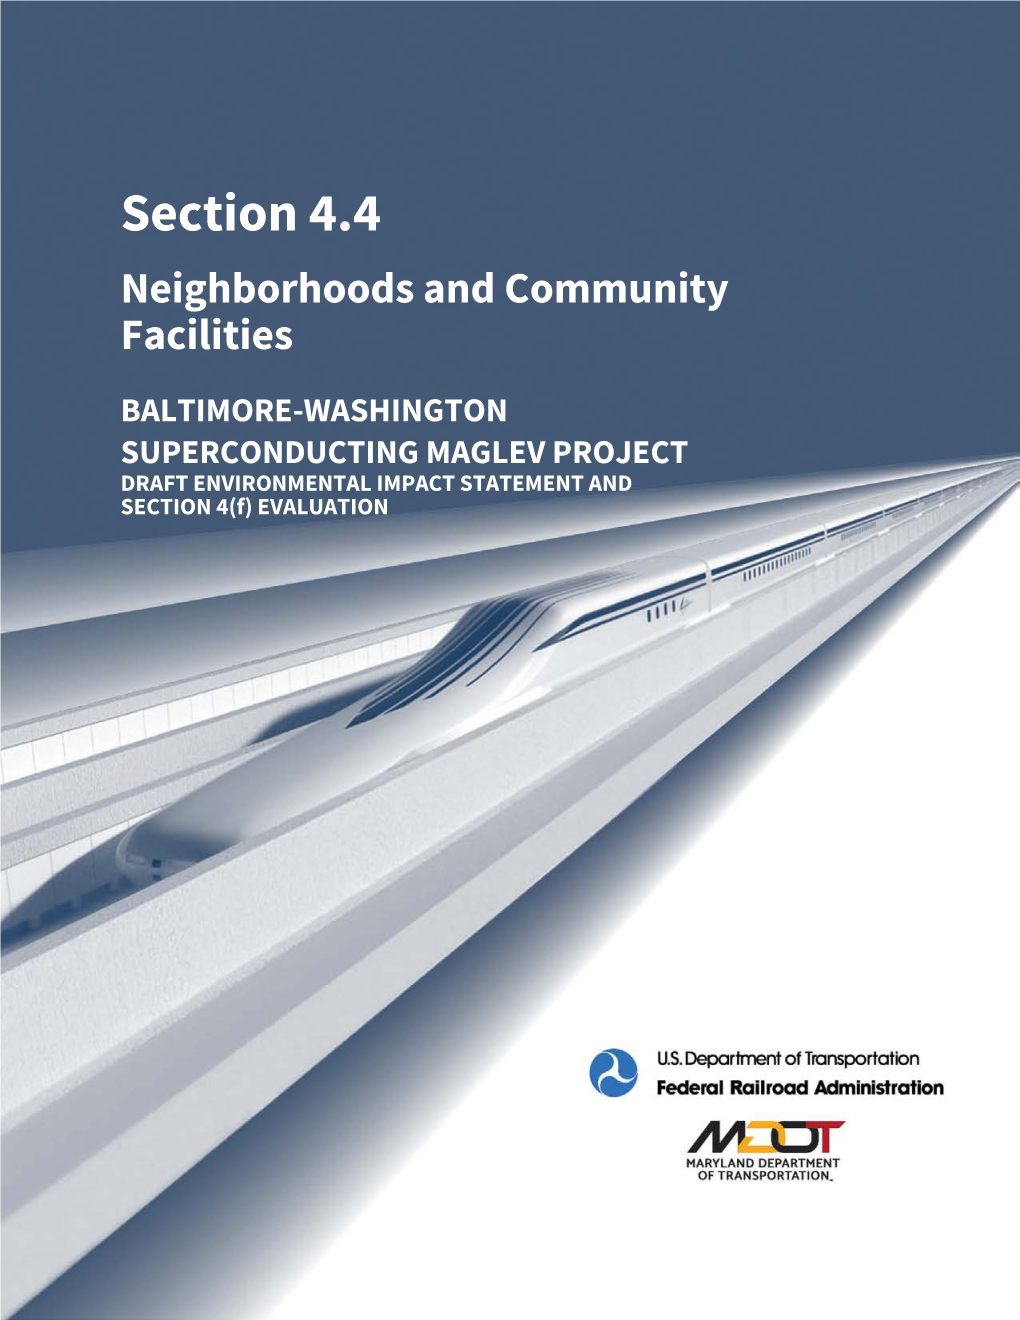 Baltimore-Washington Superconducting Maglev Draft Environmental